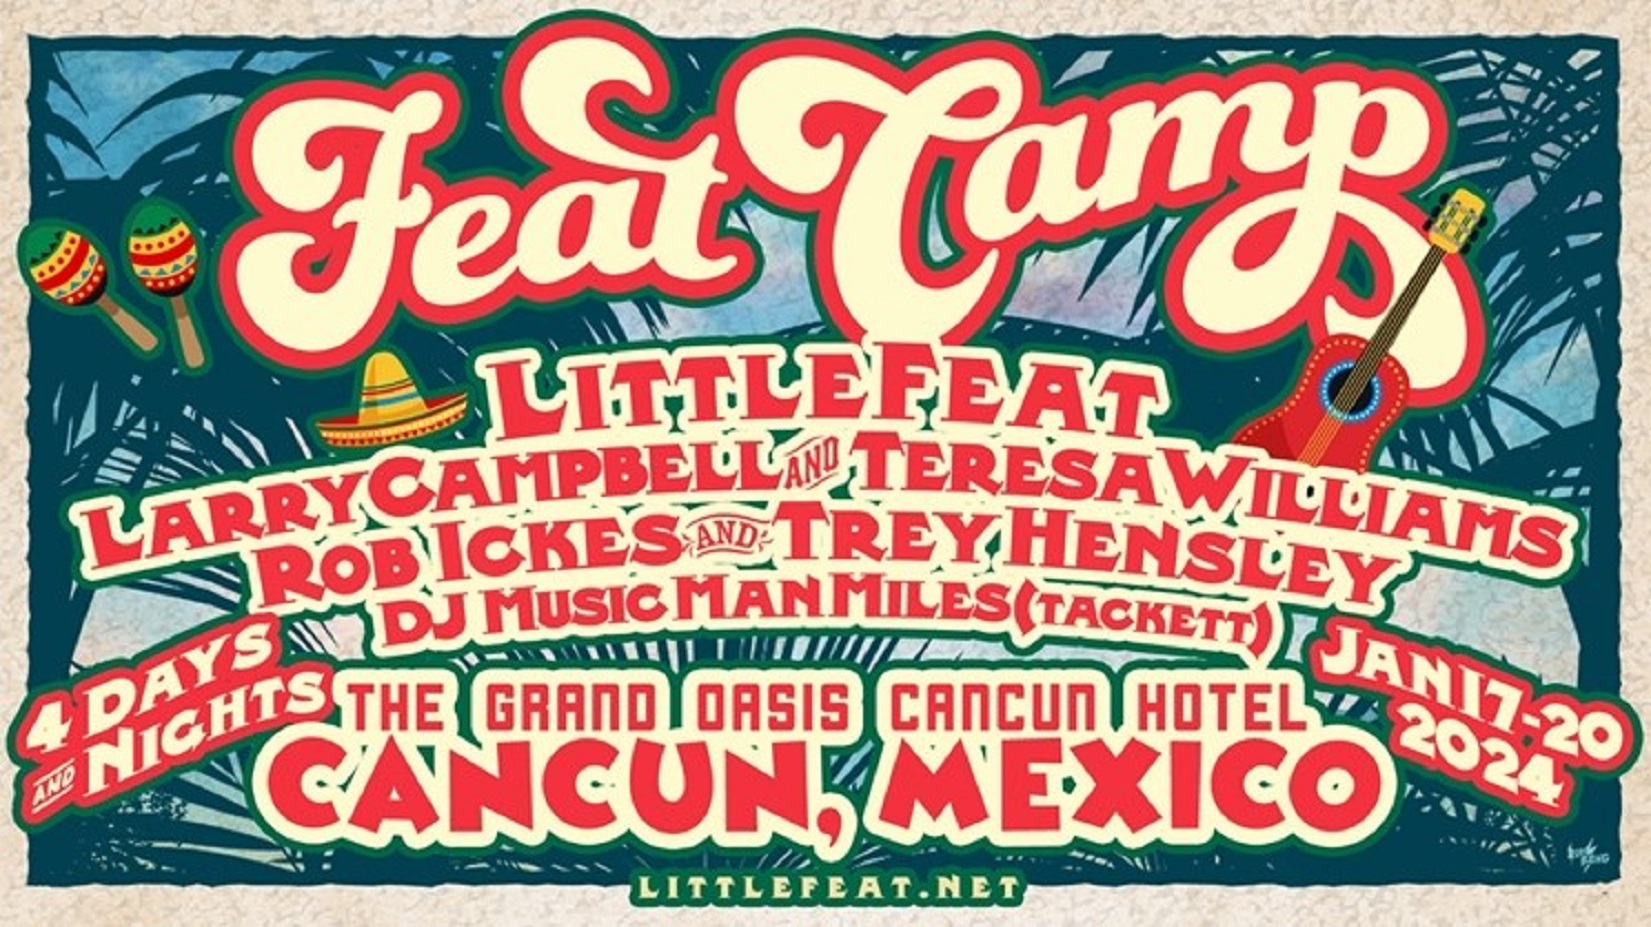 Little Feat announces Feat Camp